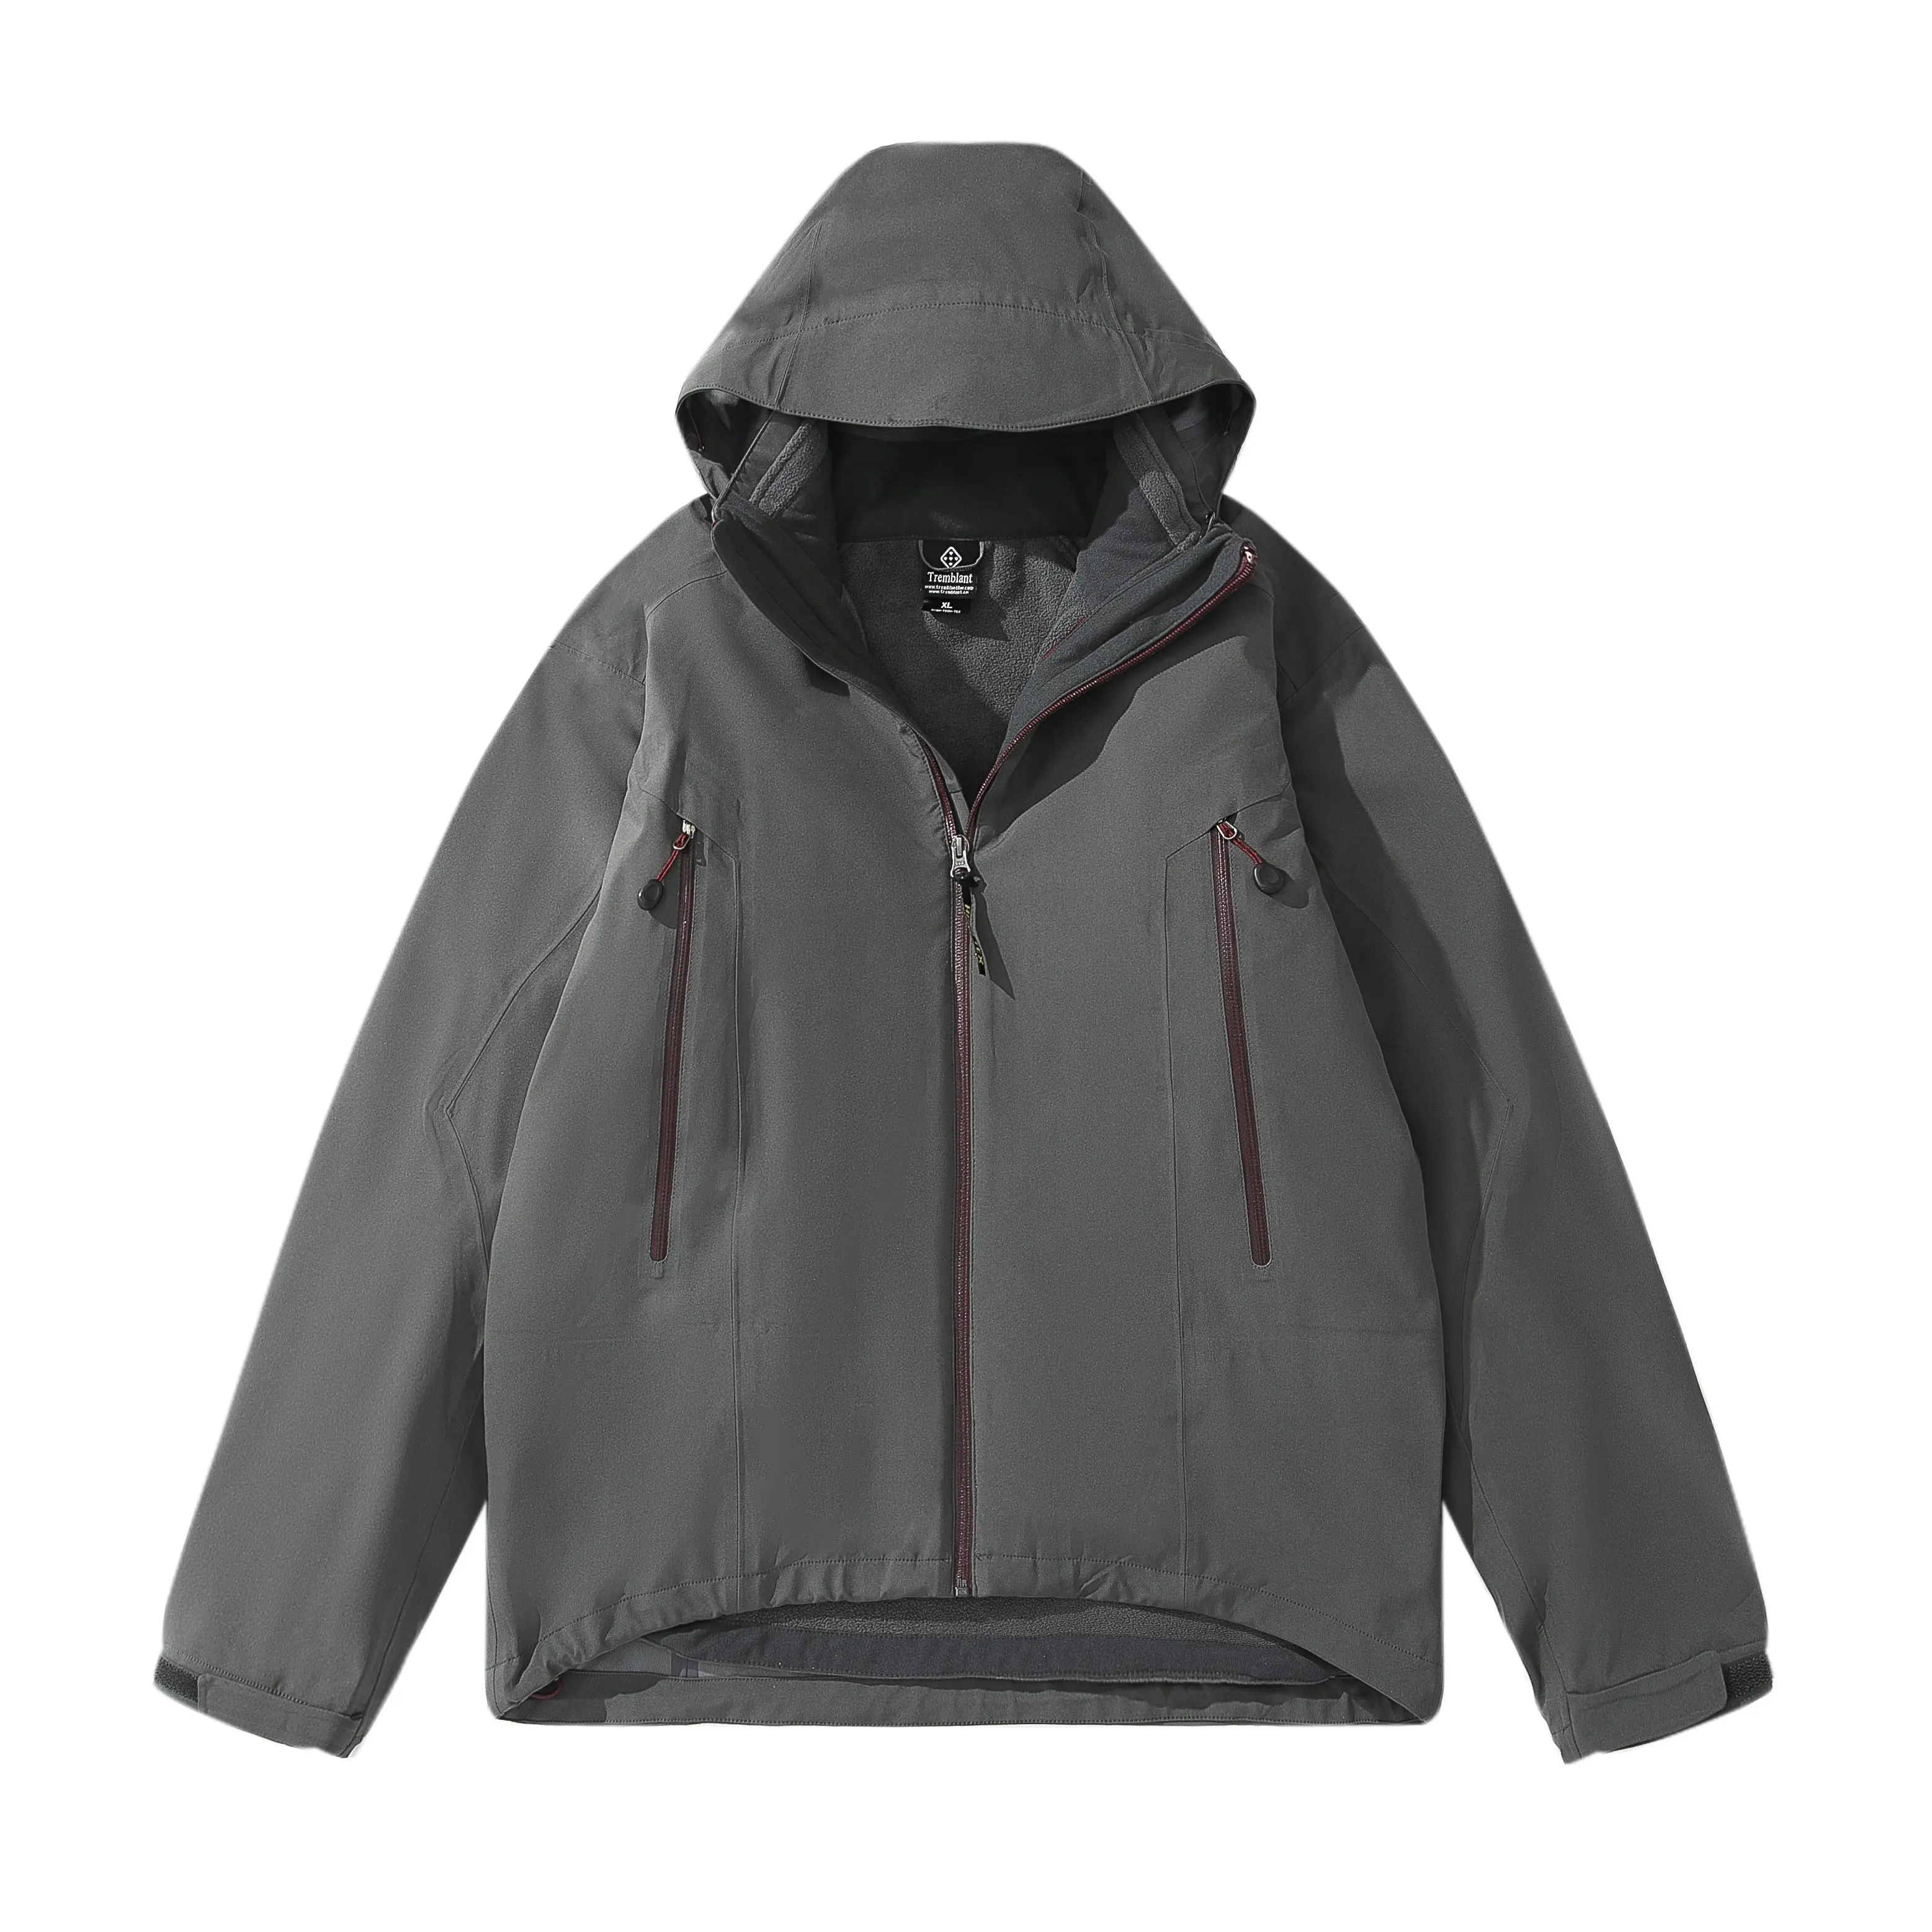 Custom winter men's waterproof fully taped seams 3-in-1 jacket inner fleece jacket hiking ski suits Jacket Outdoor